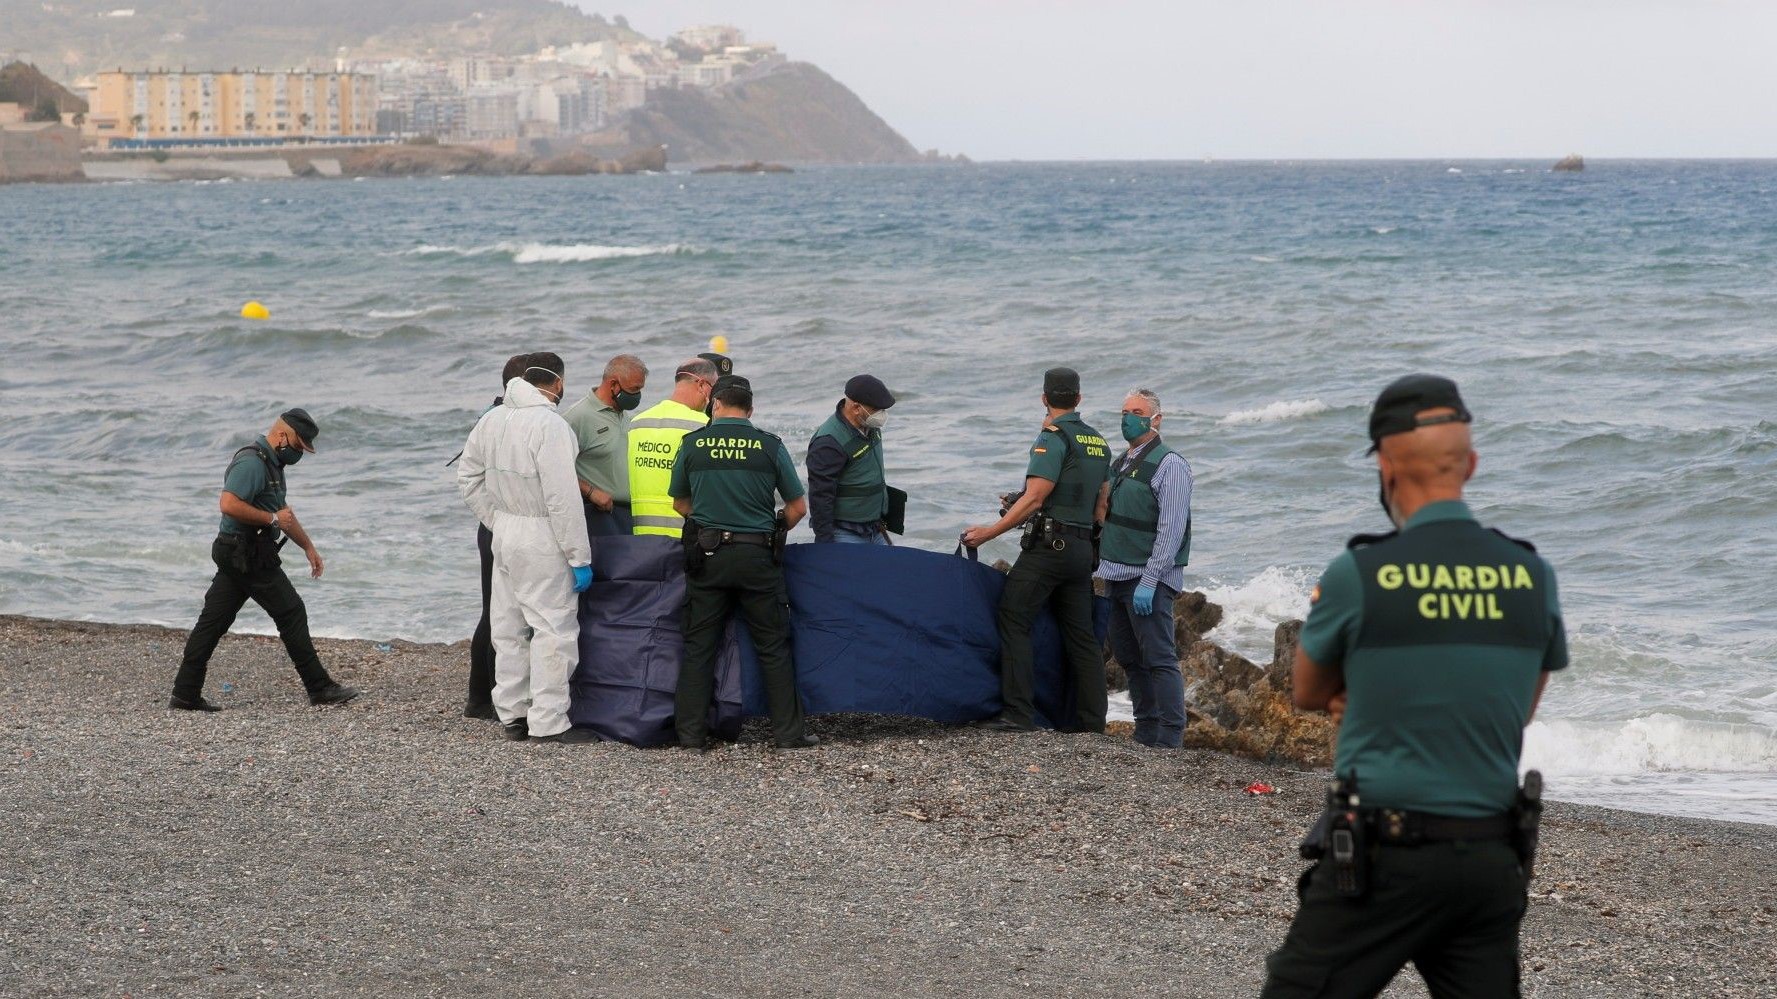 Crise migratoire de sebta : Le corps d’un jeune disparu retrouvé